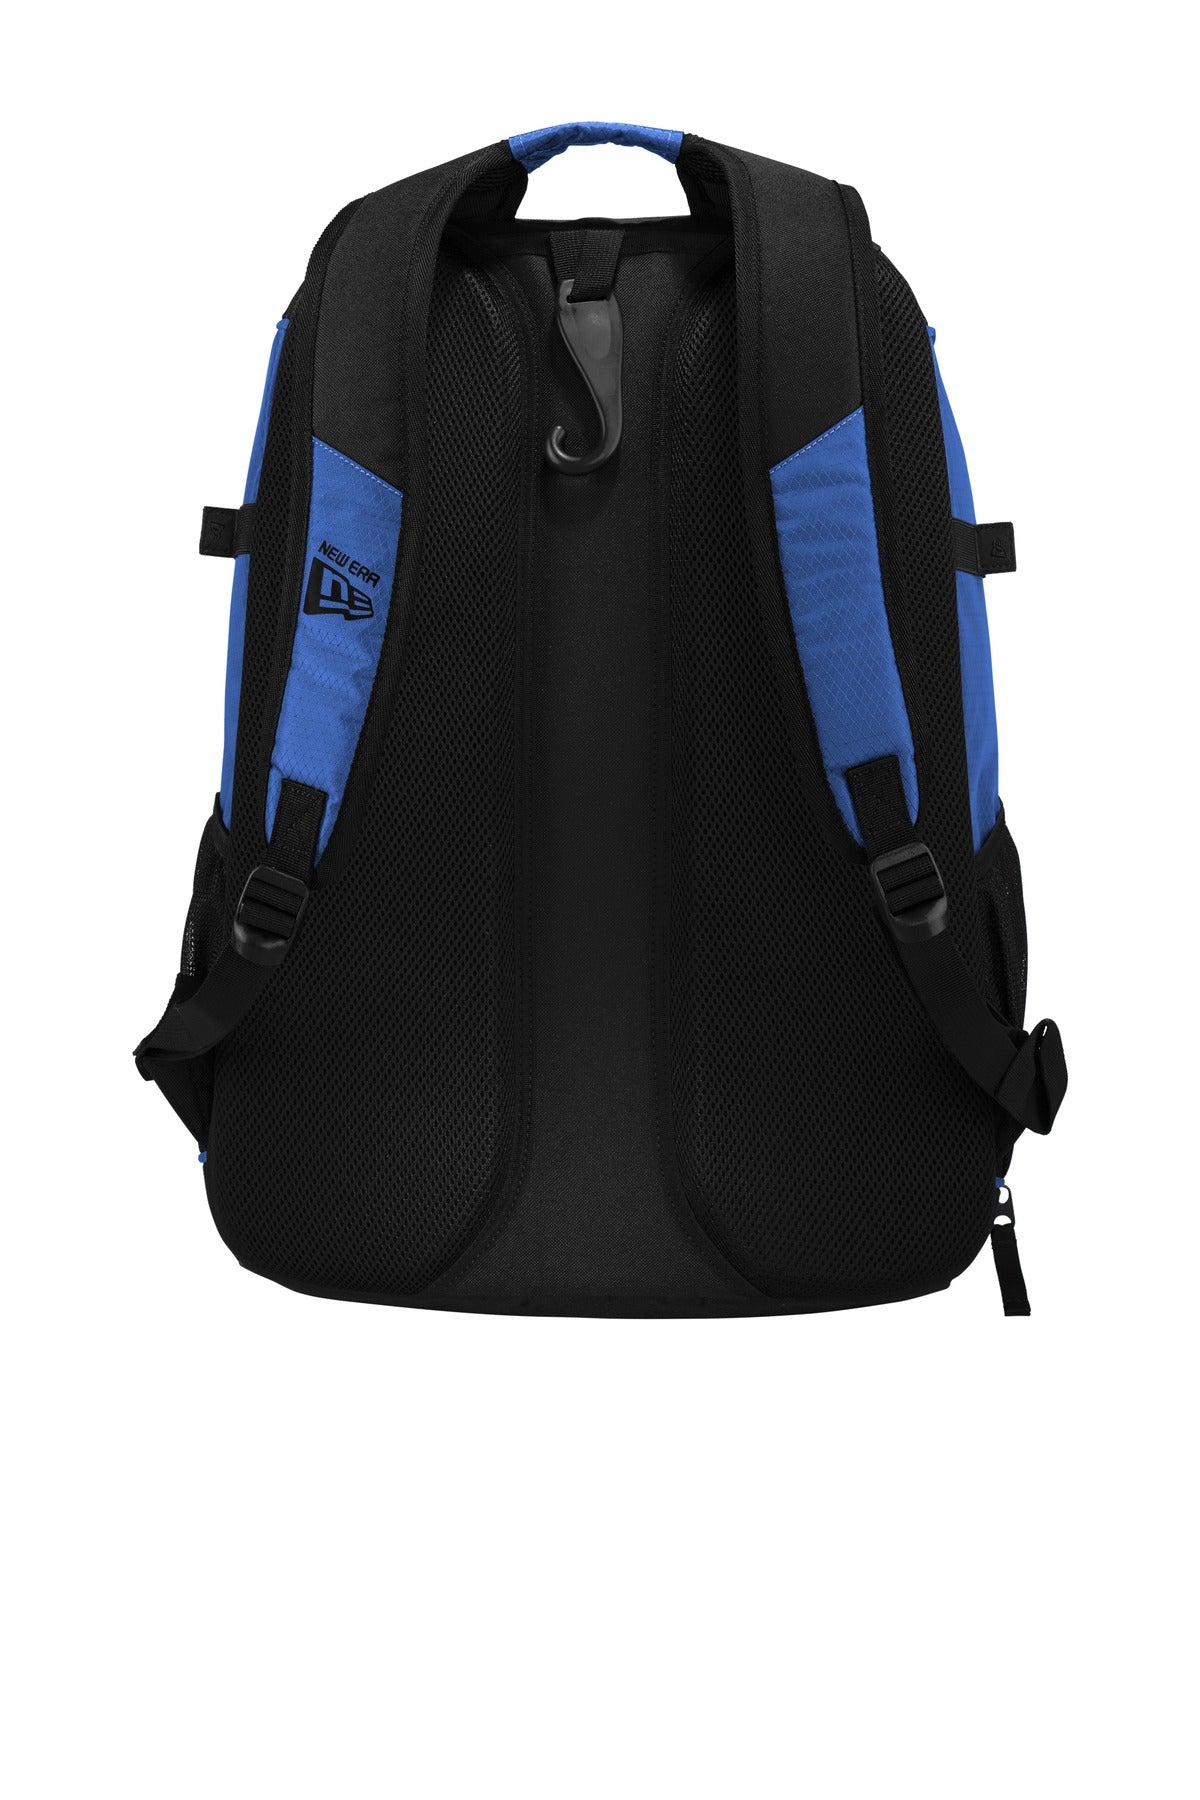 New Era Shutout Backpack NEB300